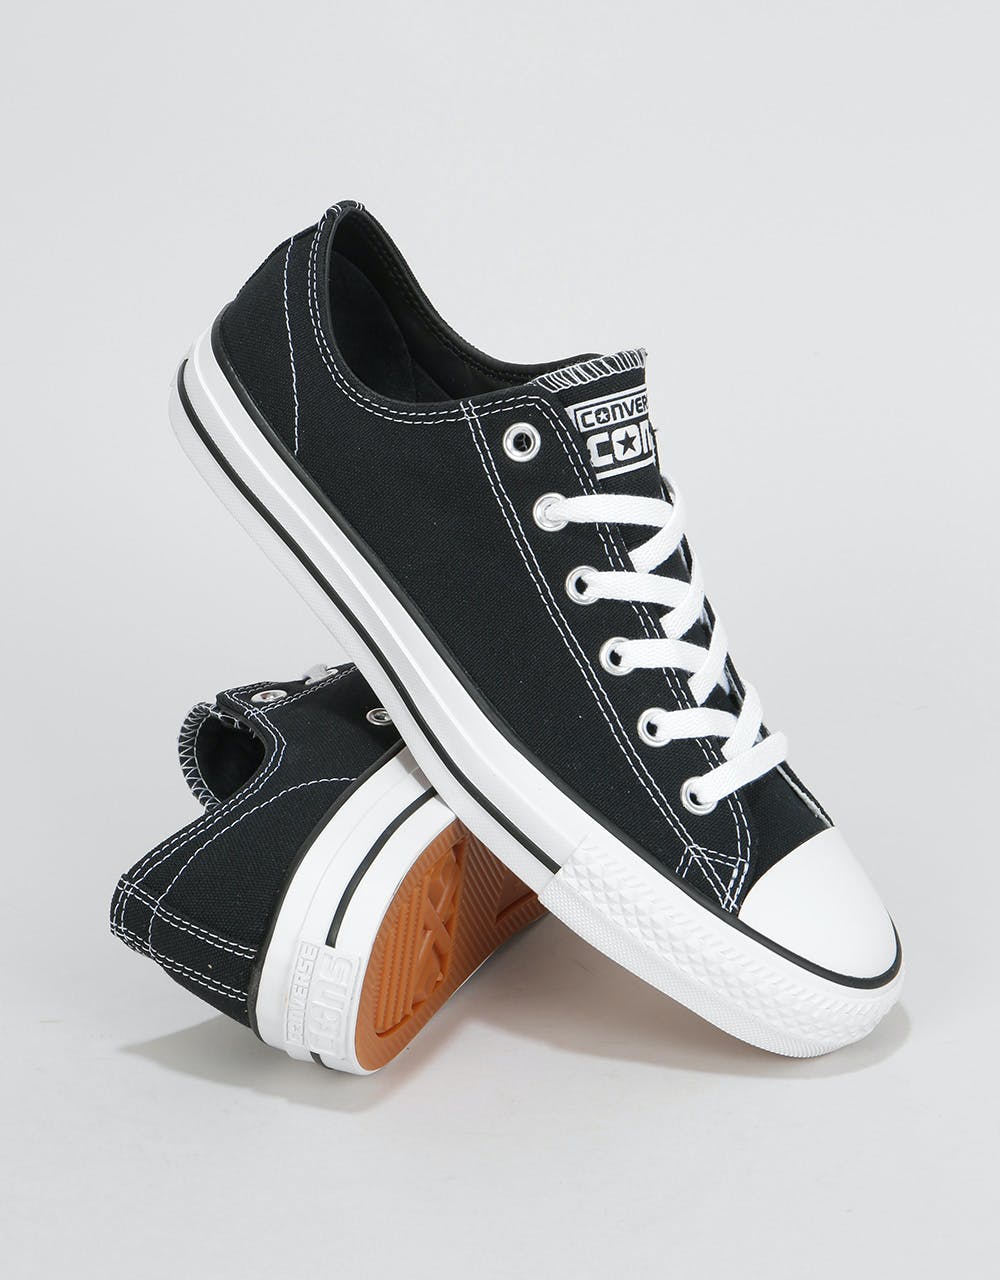 Converse CTAS Pro Ox Canvas Skate Shoes - Black/Black/White